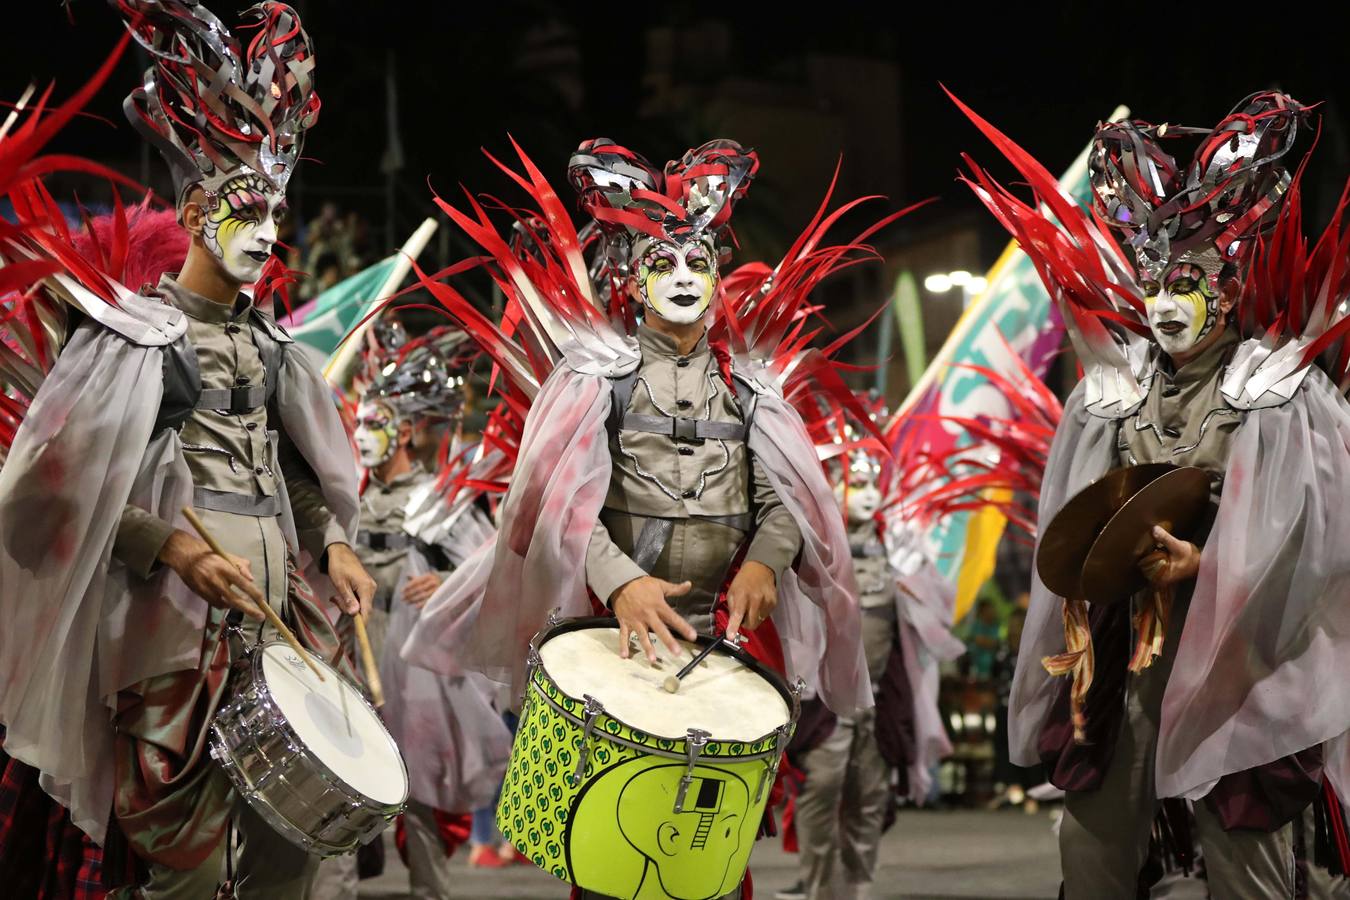 Plumas de vivos colores, movimientos rápidos de cadera y mucho canto fueron los encargados de dar el pistoletazo de salida al Carnaval de Montevideo (Uruguay), también conocido como «el más largo del mundo», por sus casi 40 días de duración